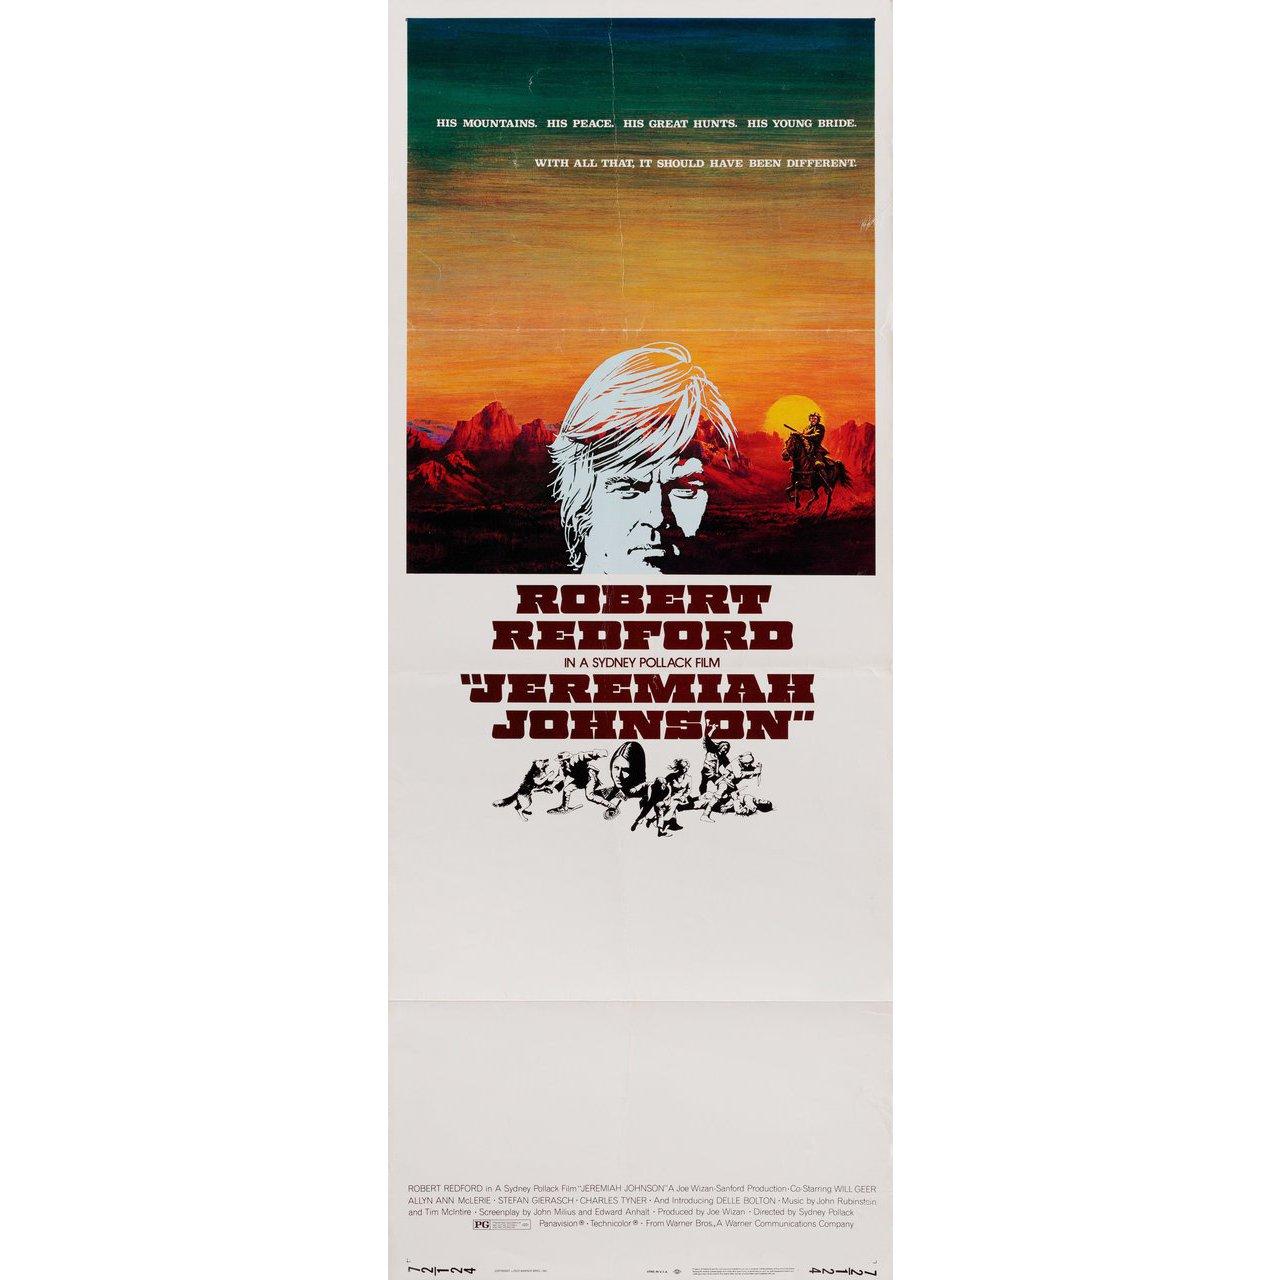 Original 1972 U.S. Insert Plakat für den Film Jeremiah Johnson von Sydney Pollack mit Robert Redford / Will Geer / Delle Bolton / Josh Albee. Sehr guter Zustand, gefaltet. Viele Originalplakate wurden gefaltet herausgegeben oder nachträglich